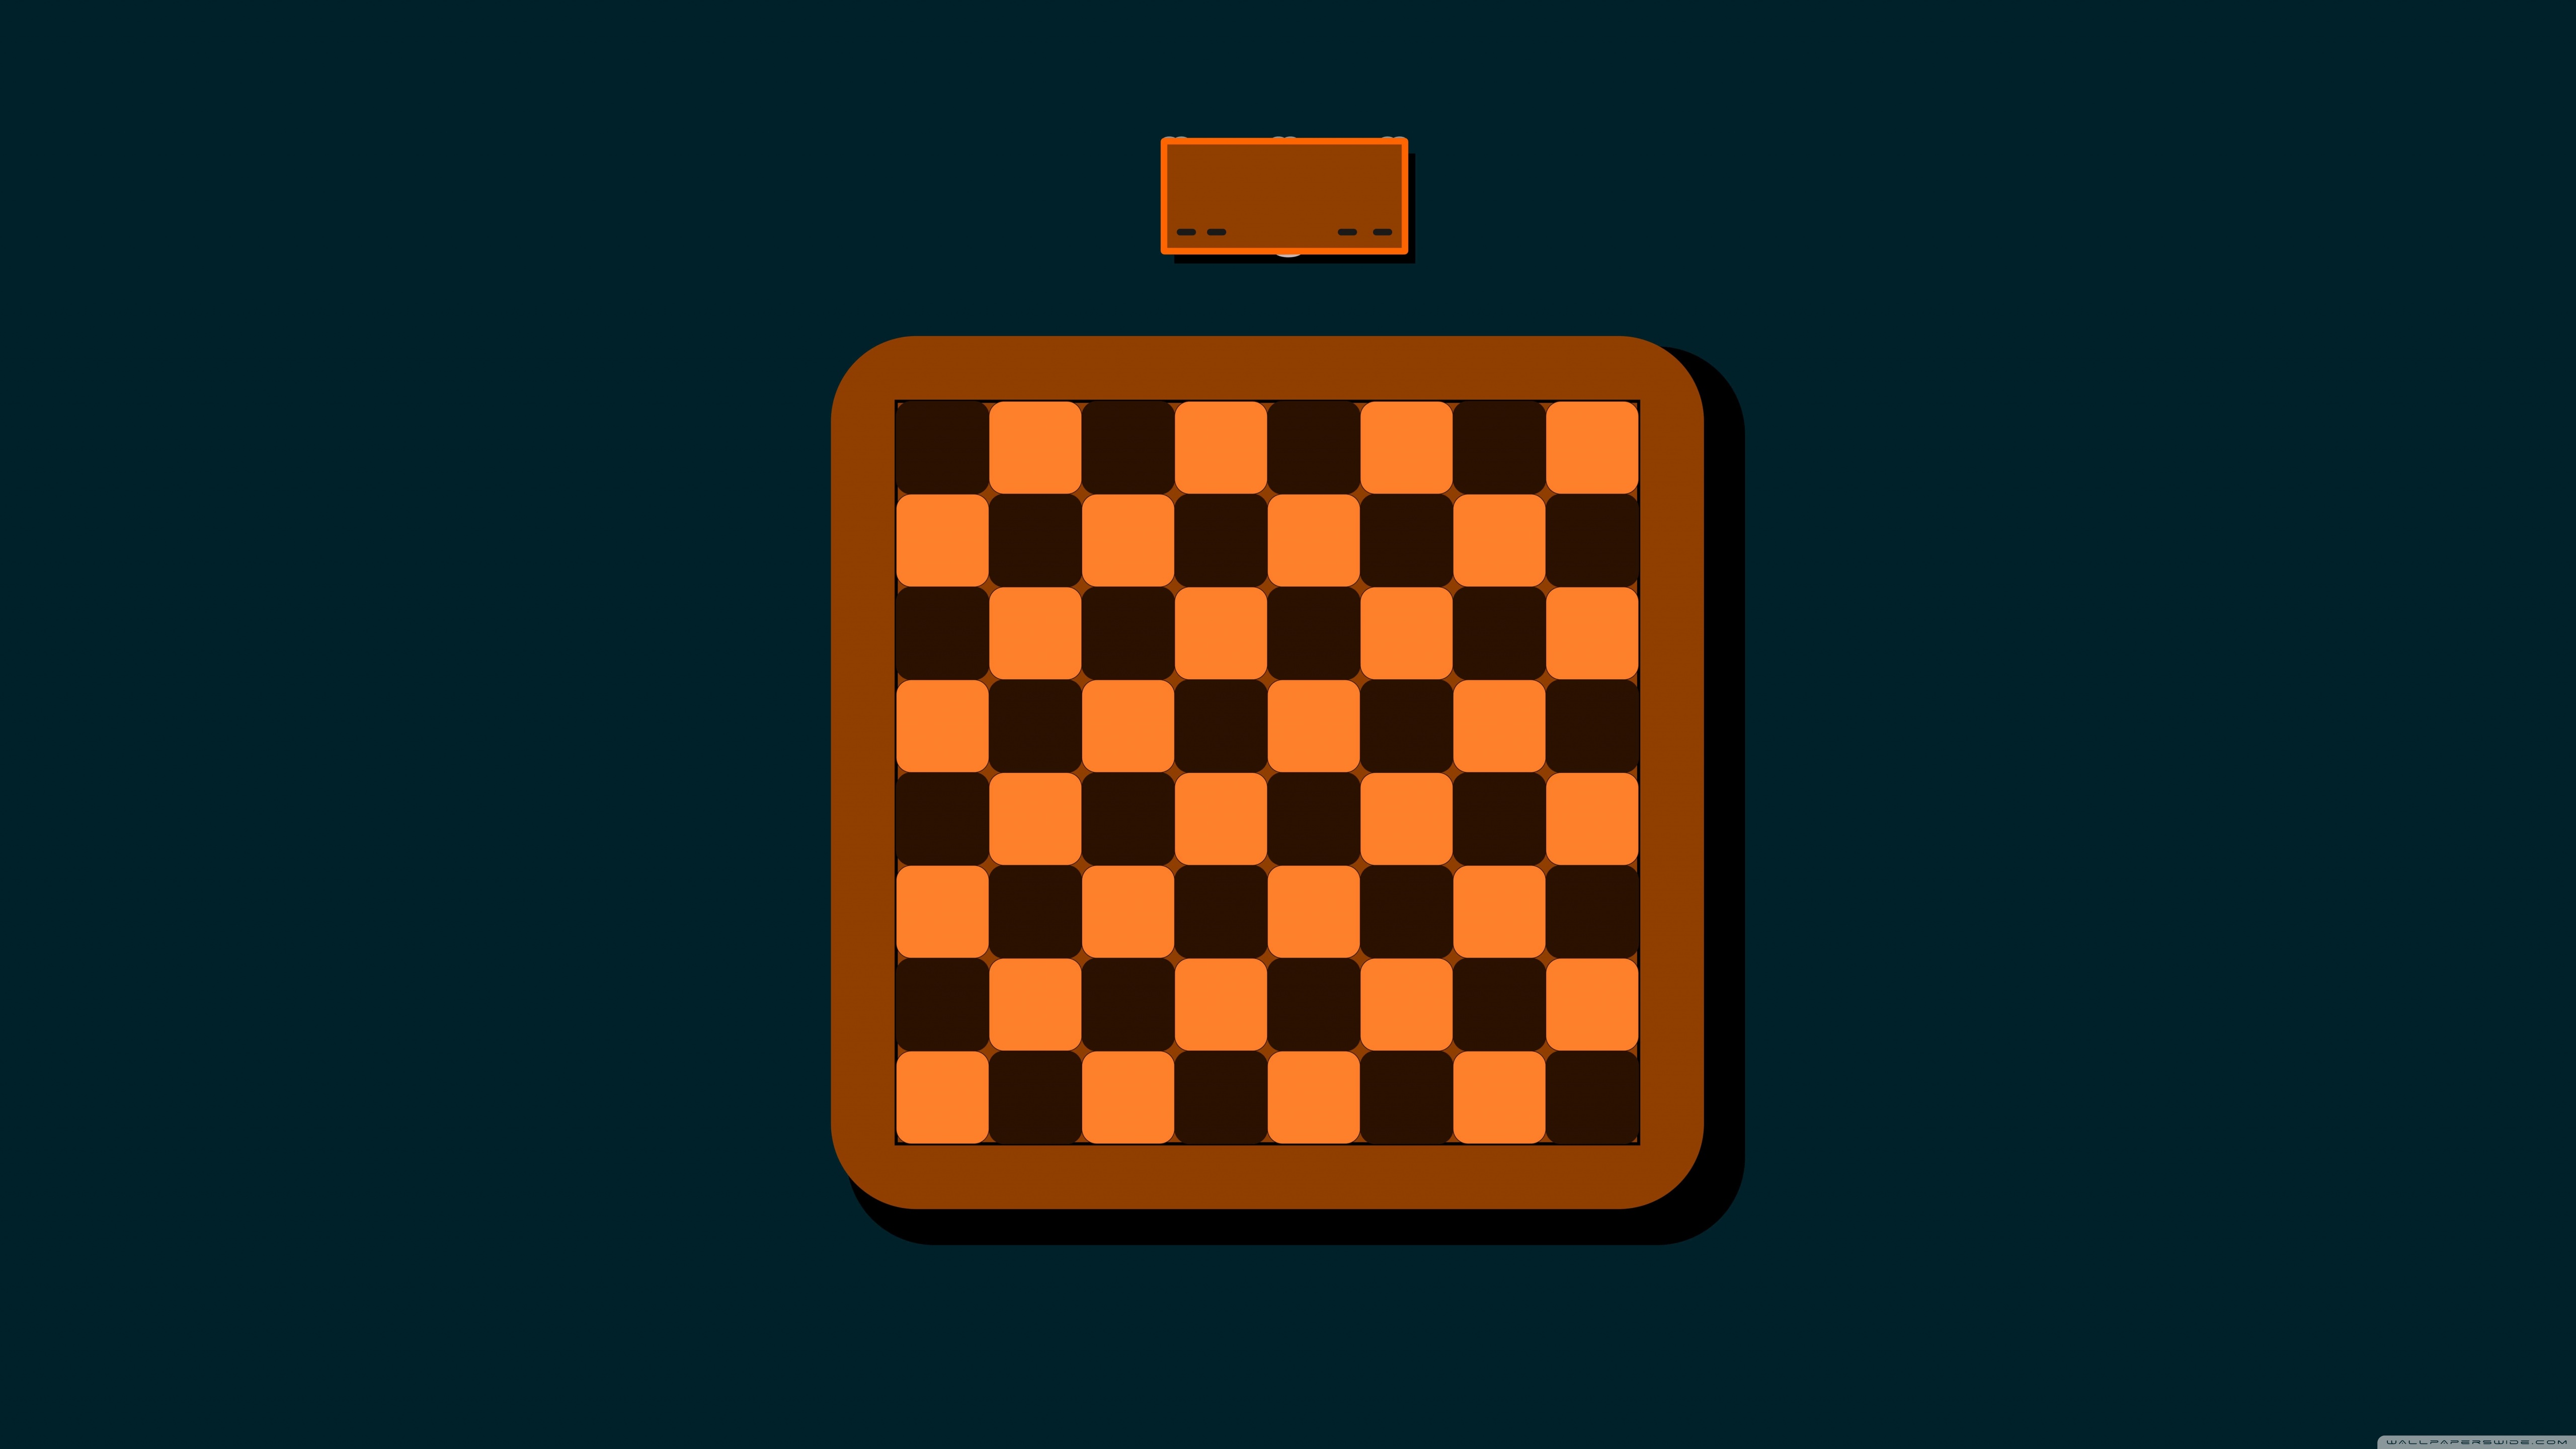 Chess Game Ultra HD Desktop Background Wallpaper for 4K UHD TV